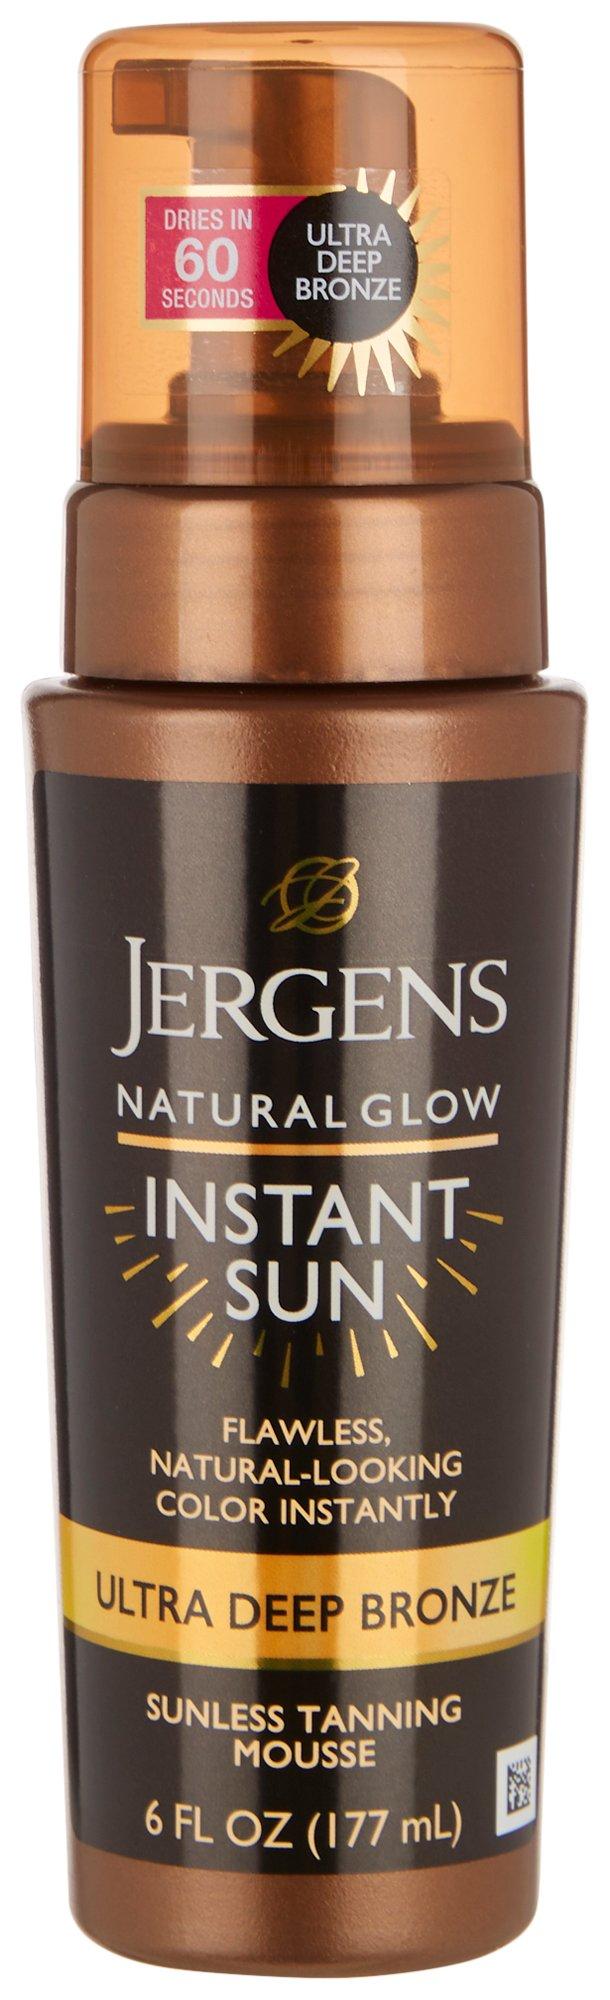 Jergens Ultra Deep Bronze Sunless Tanning Mousse